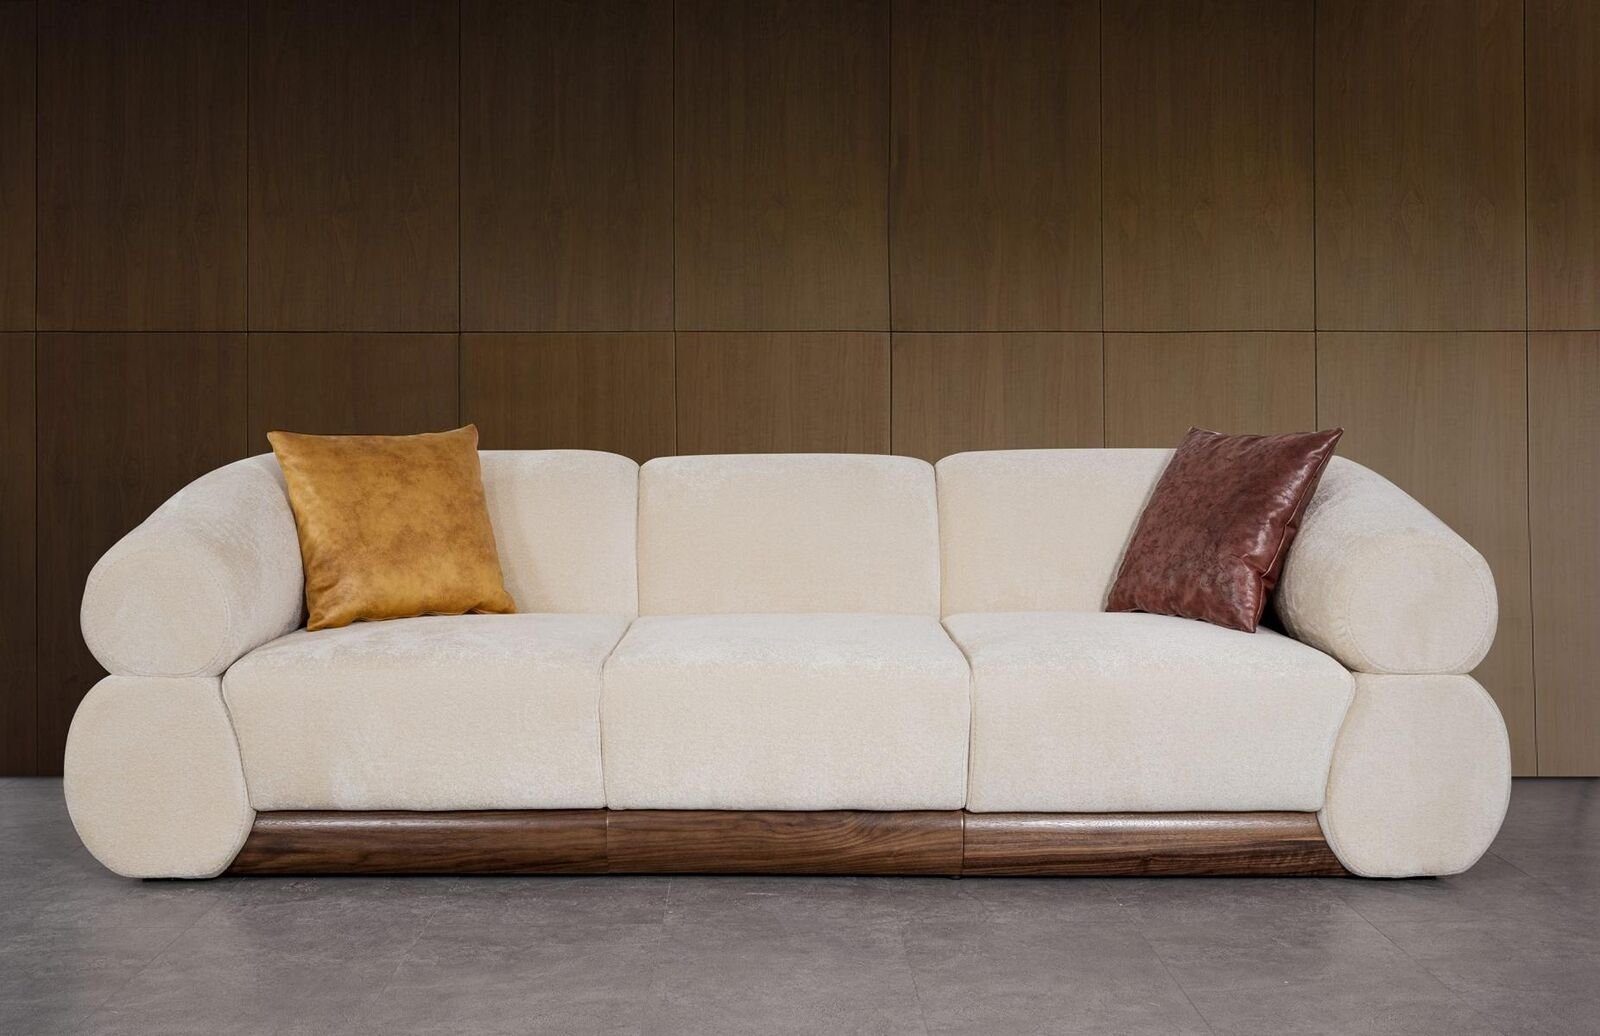 JVmoebel Sofa Sofa Viersitzer Luxus Design Sofas Möbel Wohnzimmer Couch Polster, 1 Teile, Made in Europa